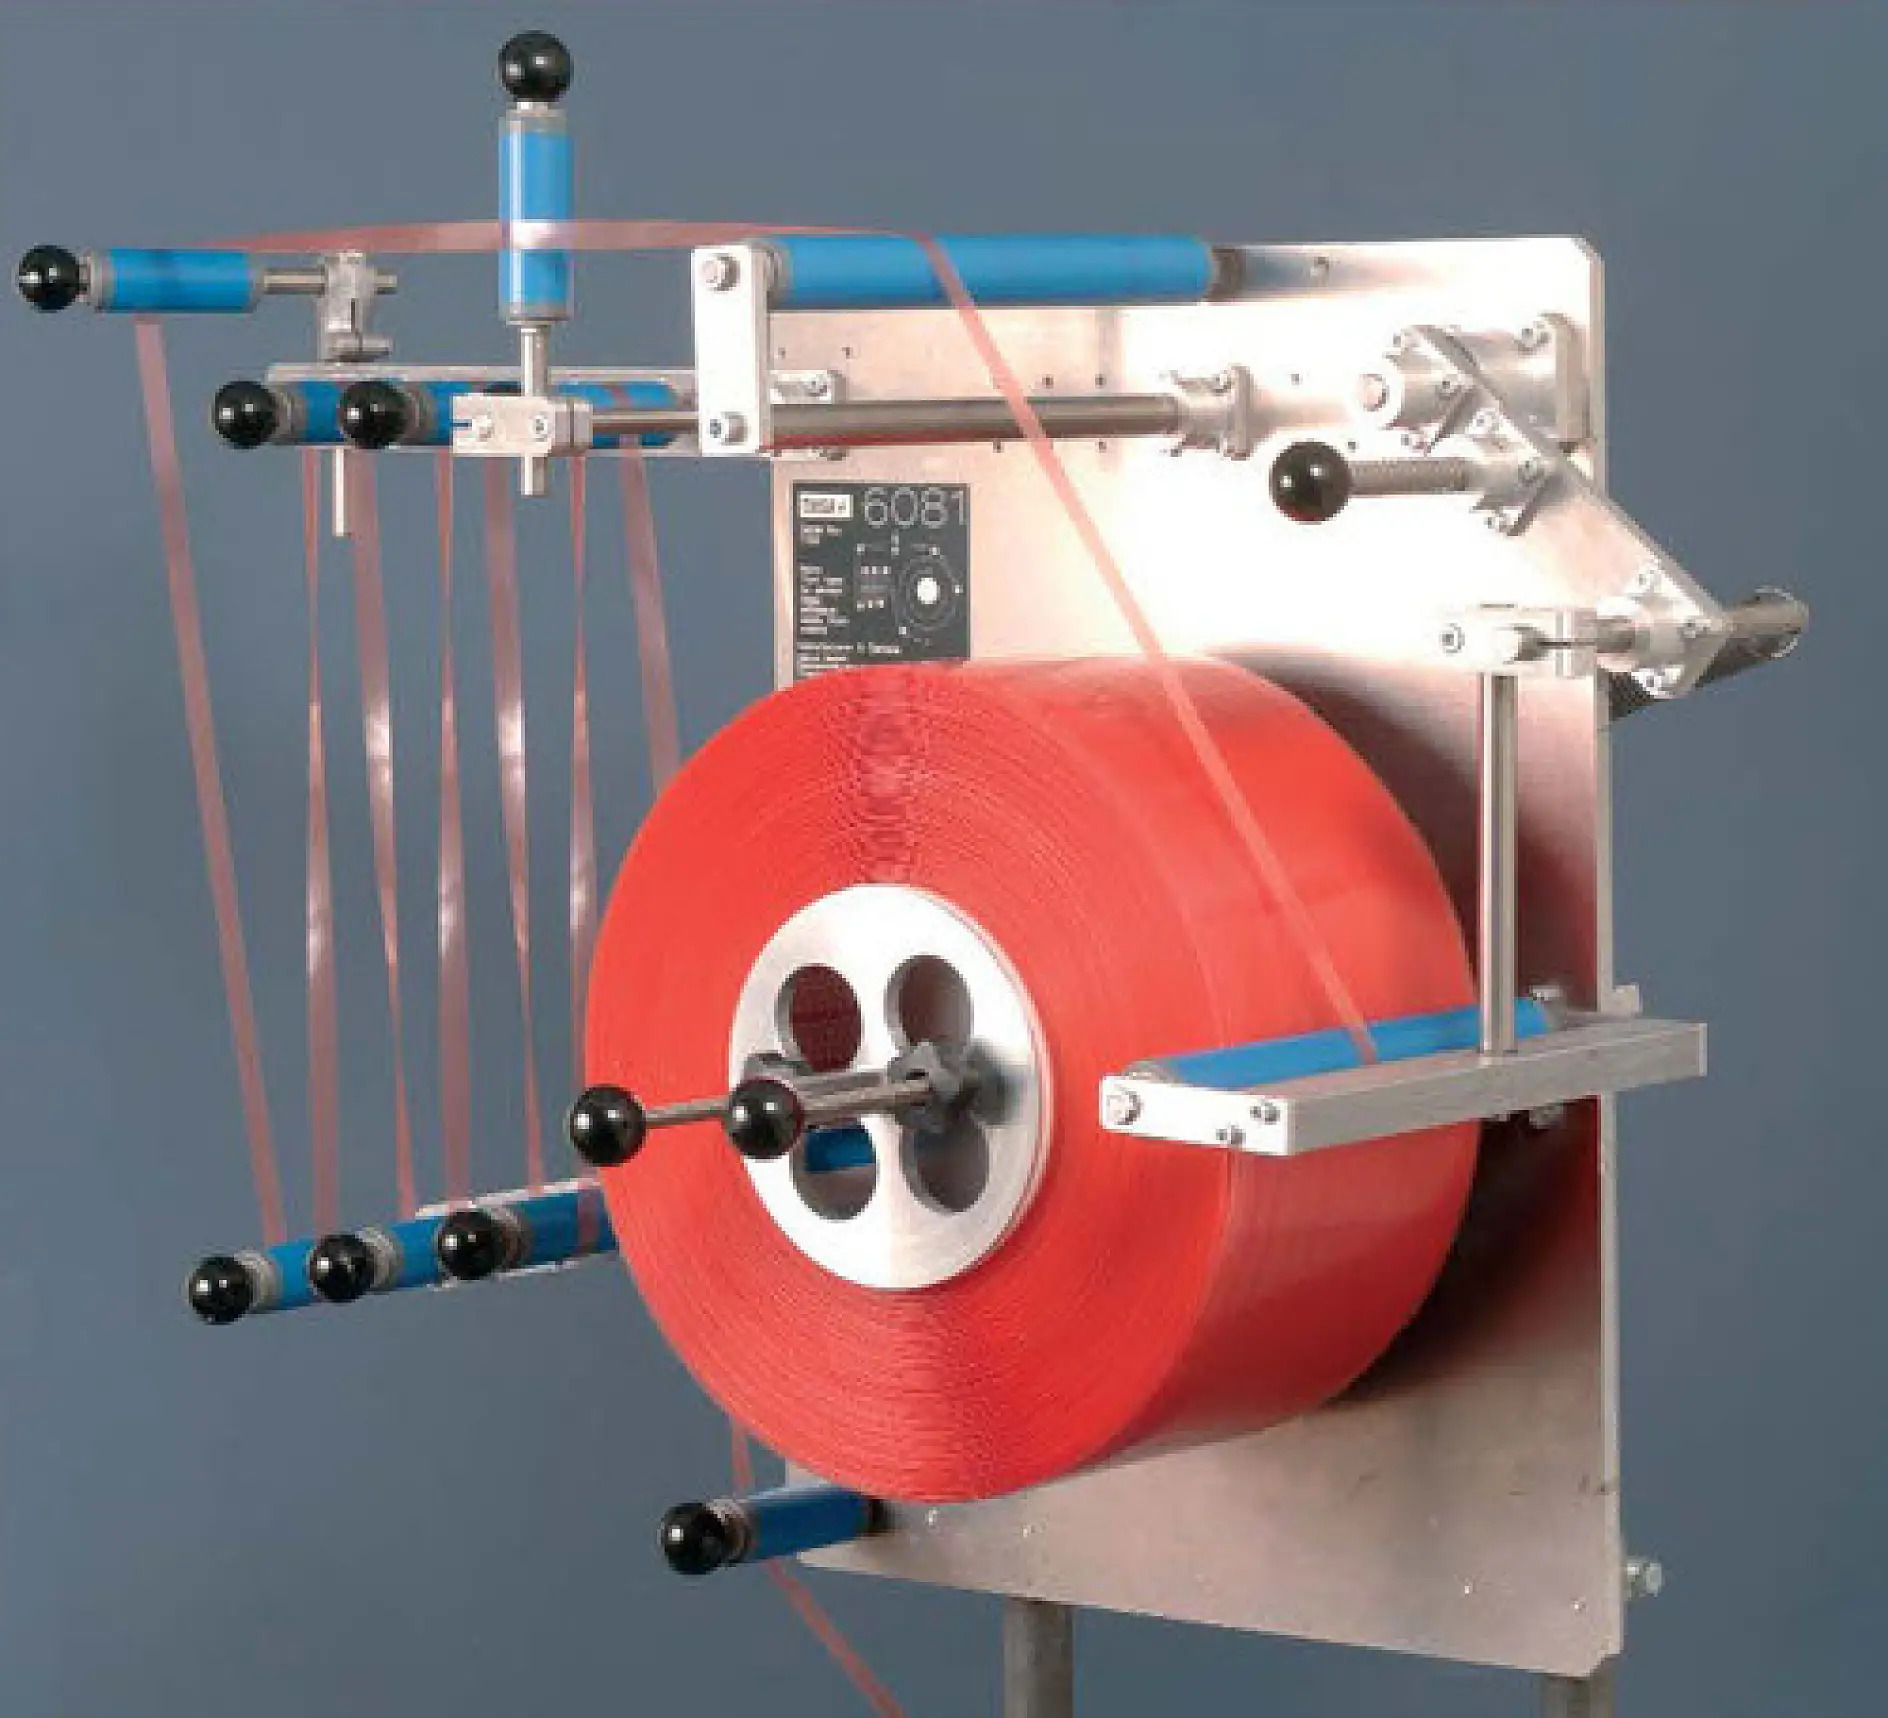 Máy cắt băng keo tesa® 6081 được phát triển để tích hợp dễ dàng vào quá trình đóng gói.